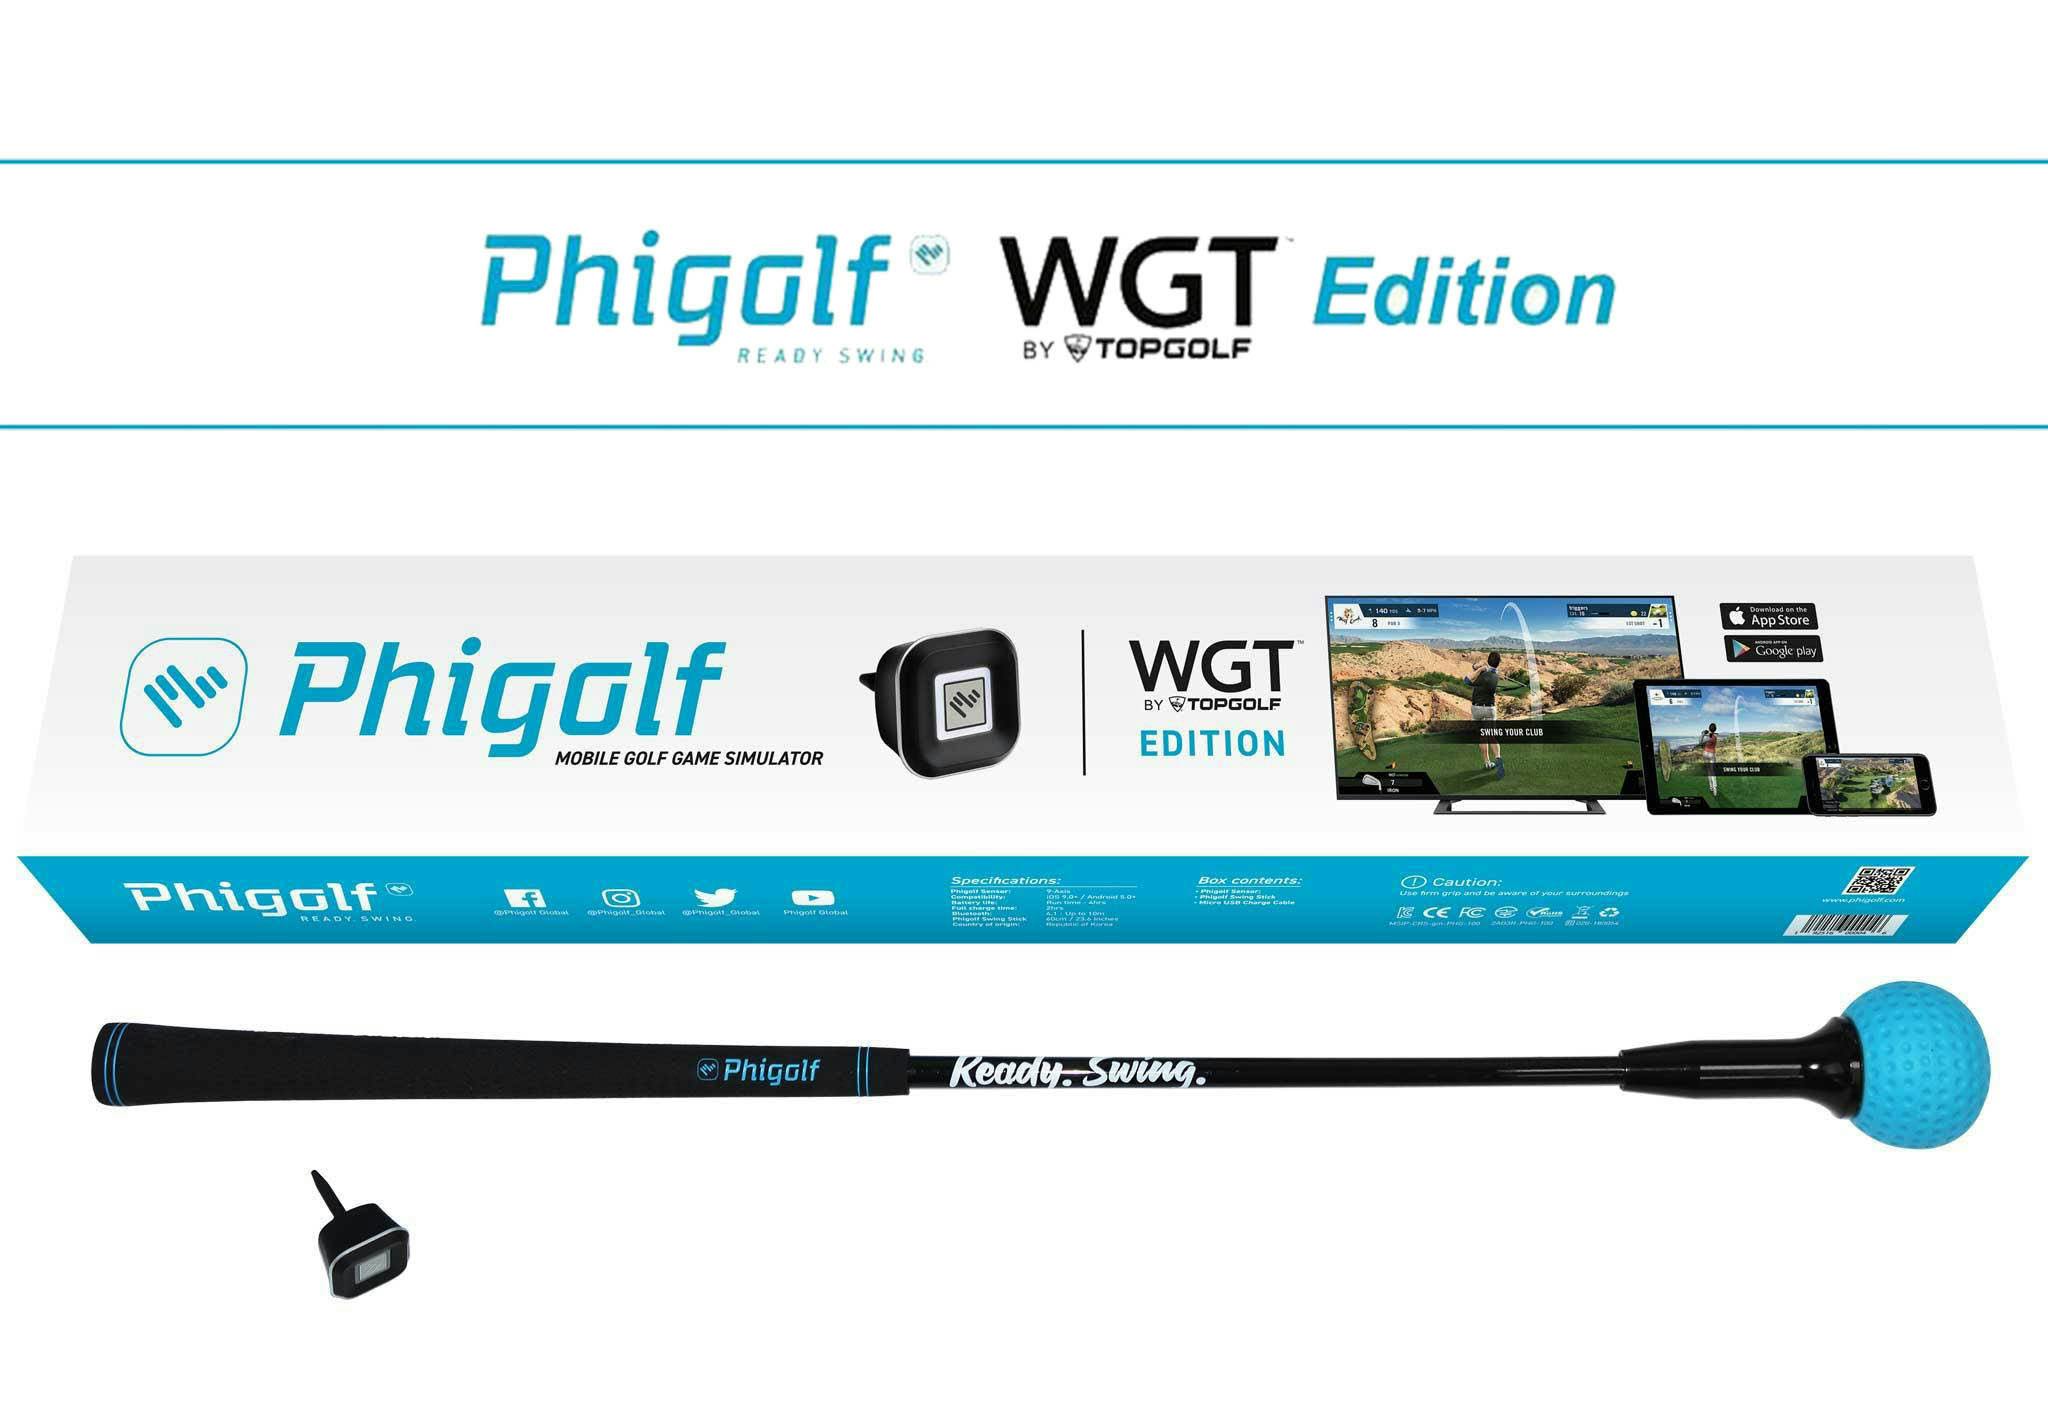 あなたのリビングがゴルフ場に変わる「ファイゴルフ WGT Edition」